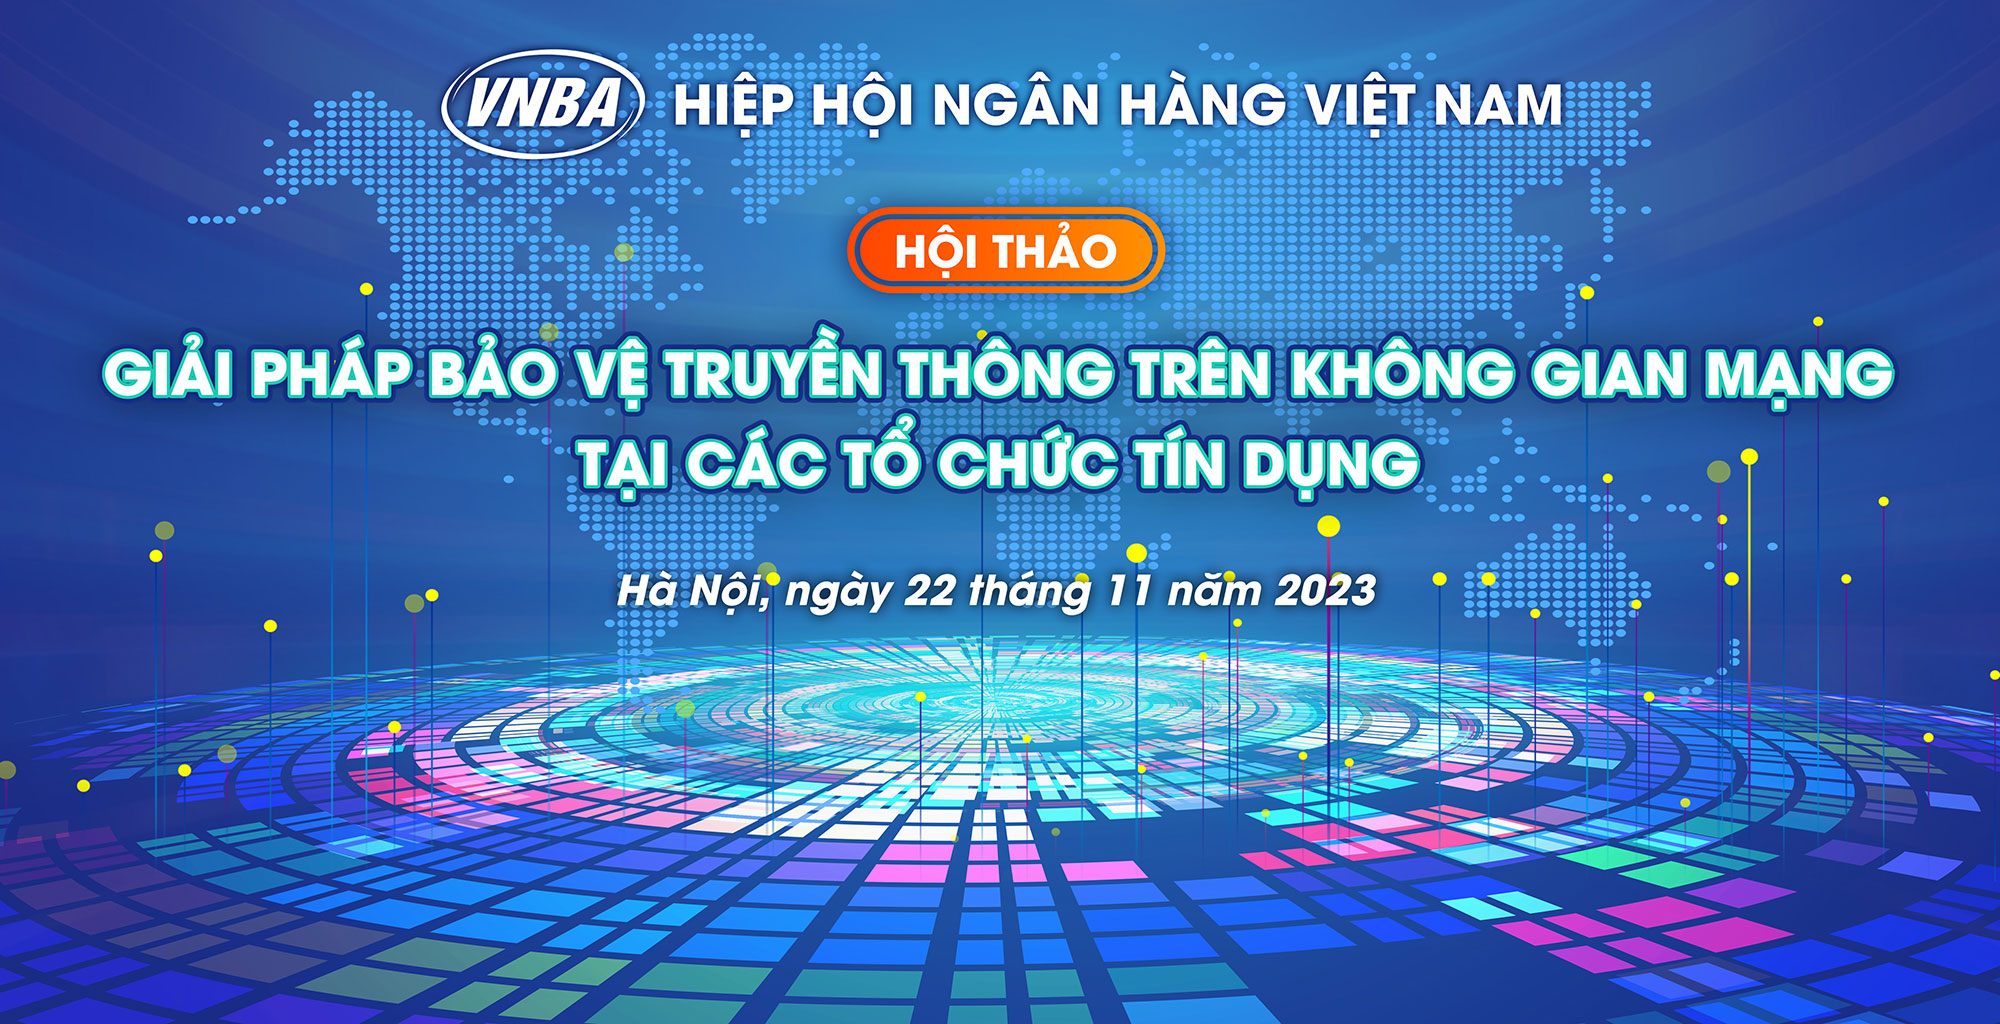 Hiệp hội Ngân hàng Việt Nam tổ chức hội thảo "Giải pháp bảo vệ truyền thông trên không gian mạng tại các tổ chức tín dụng"